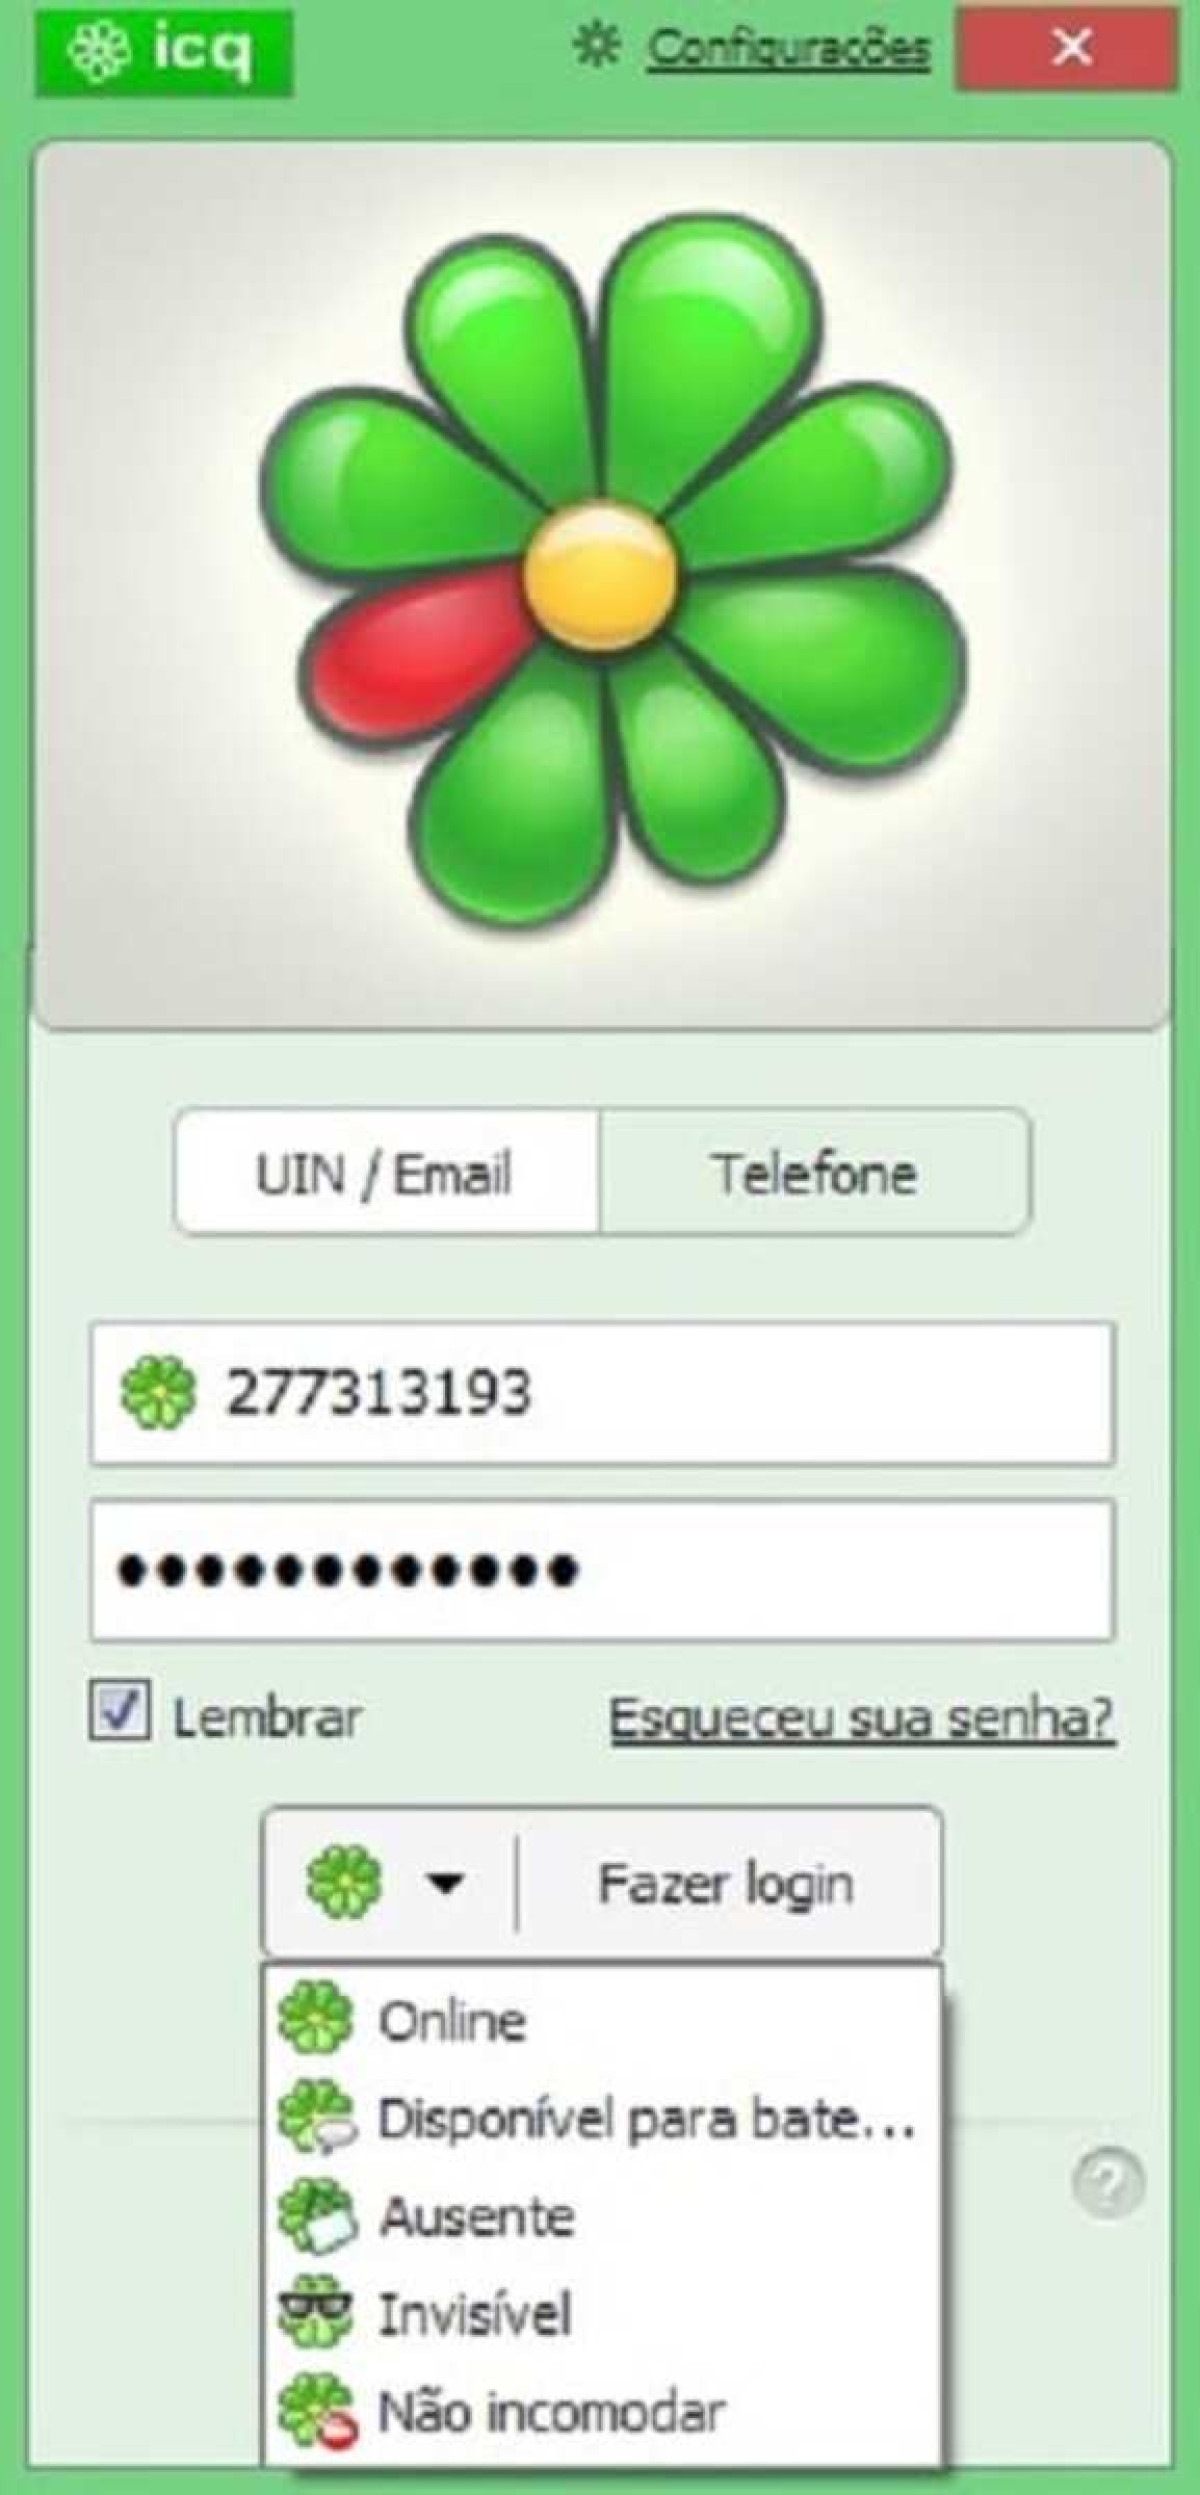 ICQ: Primeiro aplicativo de mensagens a se popularizar vai sair do ar